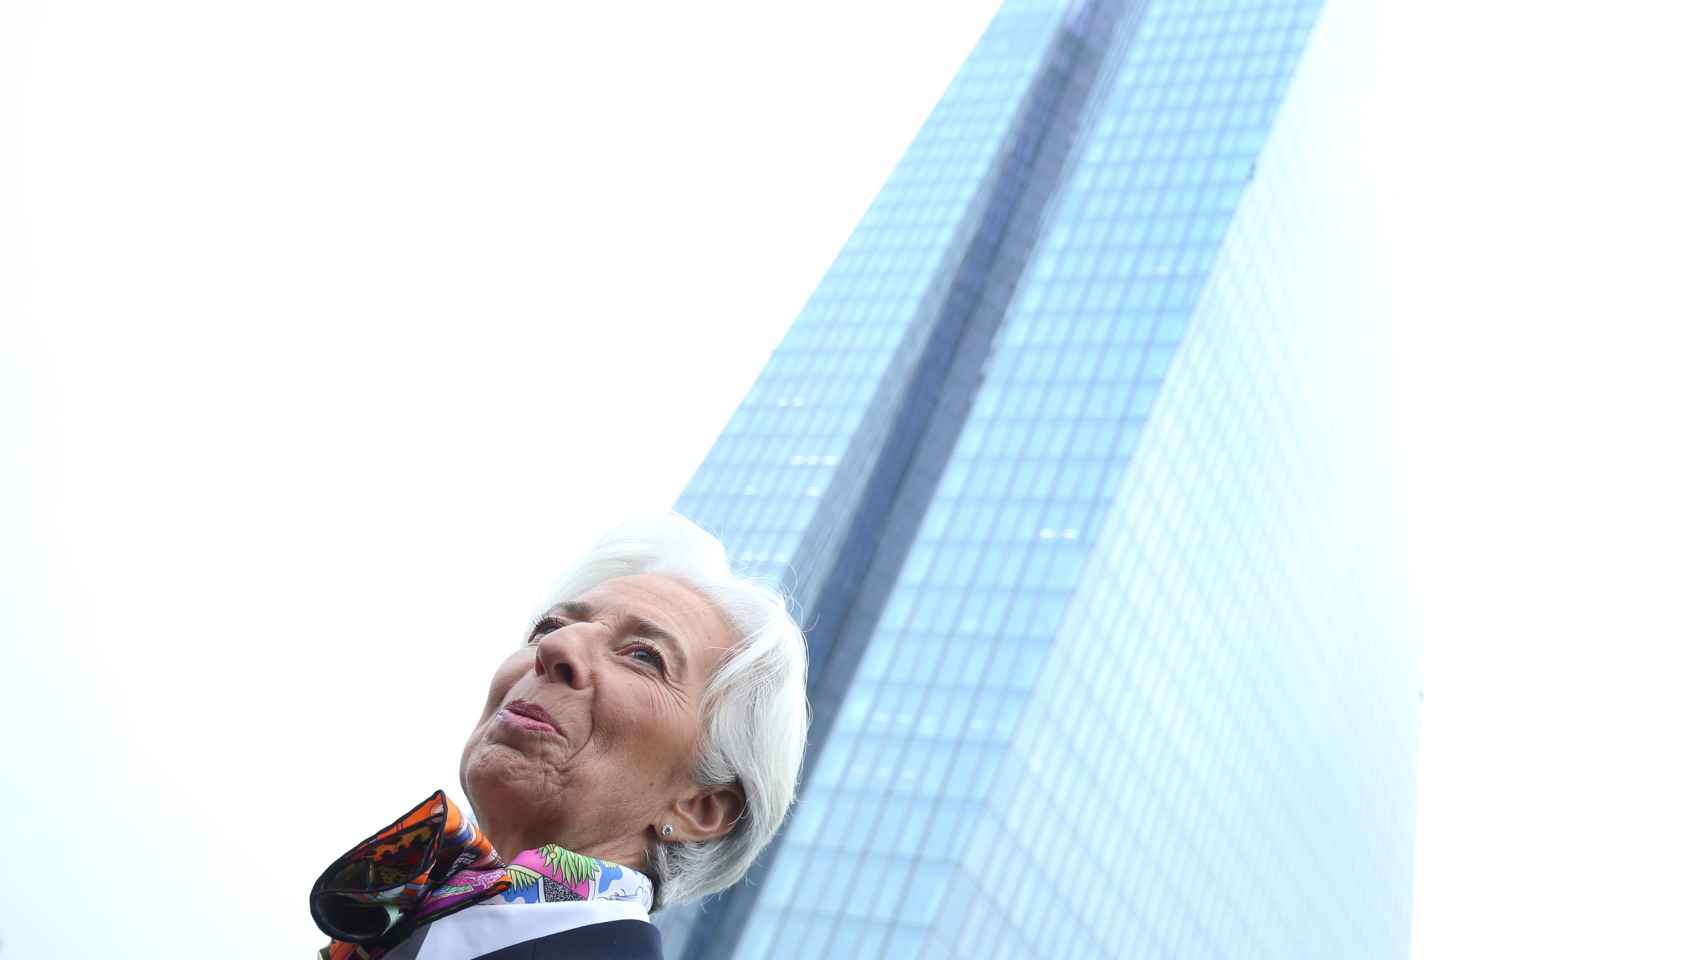 Lagarde aterriza en el BCE con el empeño de impulsar las fusiones transfronterizas de la banca